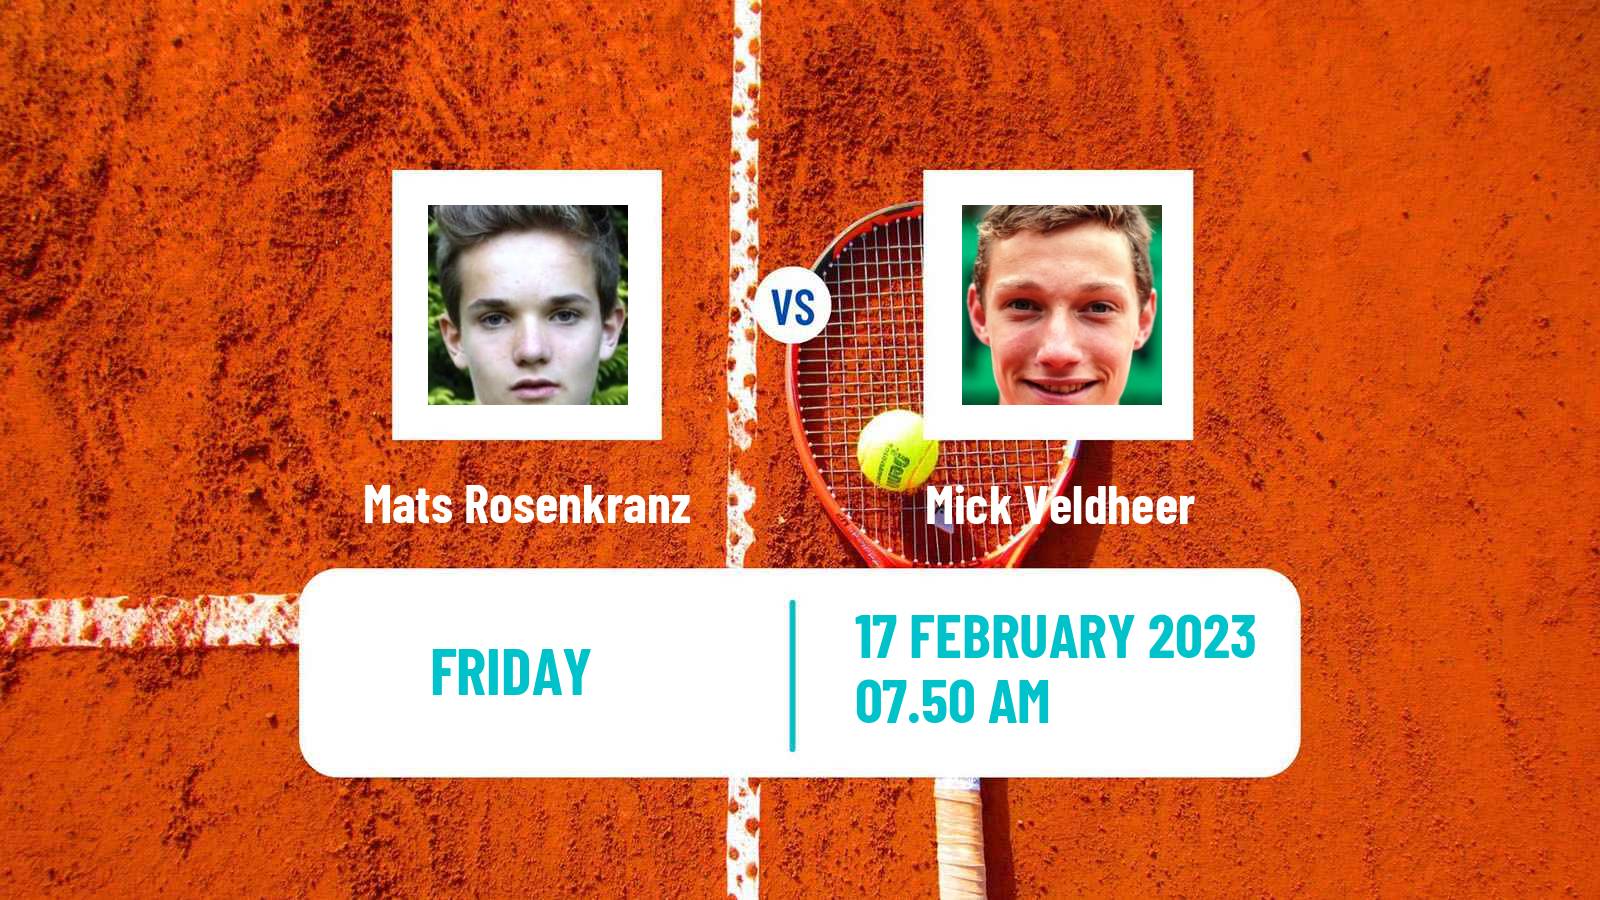 Tennis ITF Tournaments Mats Rosenkranz - Mick Veldheer